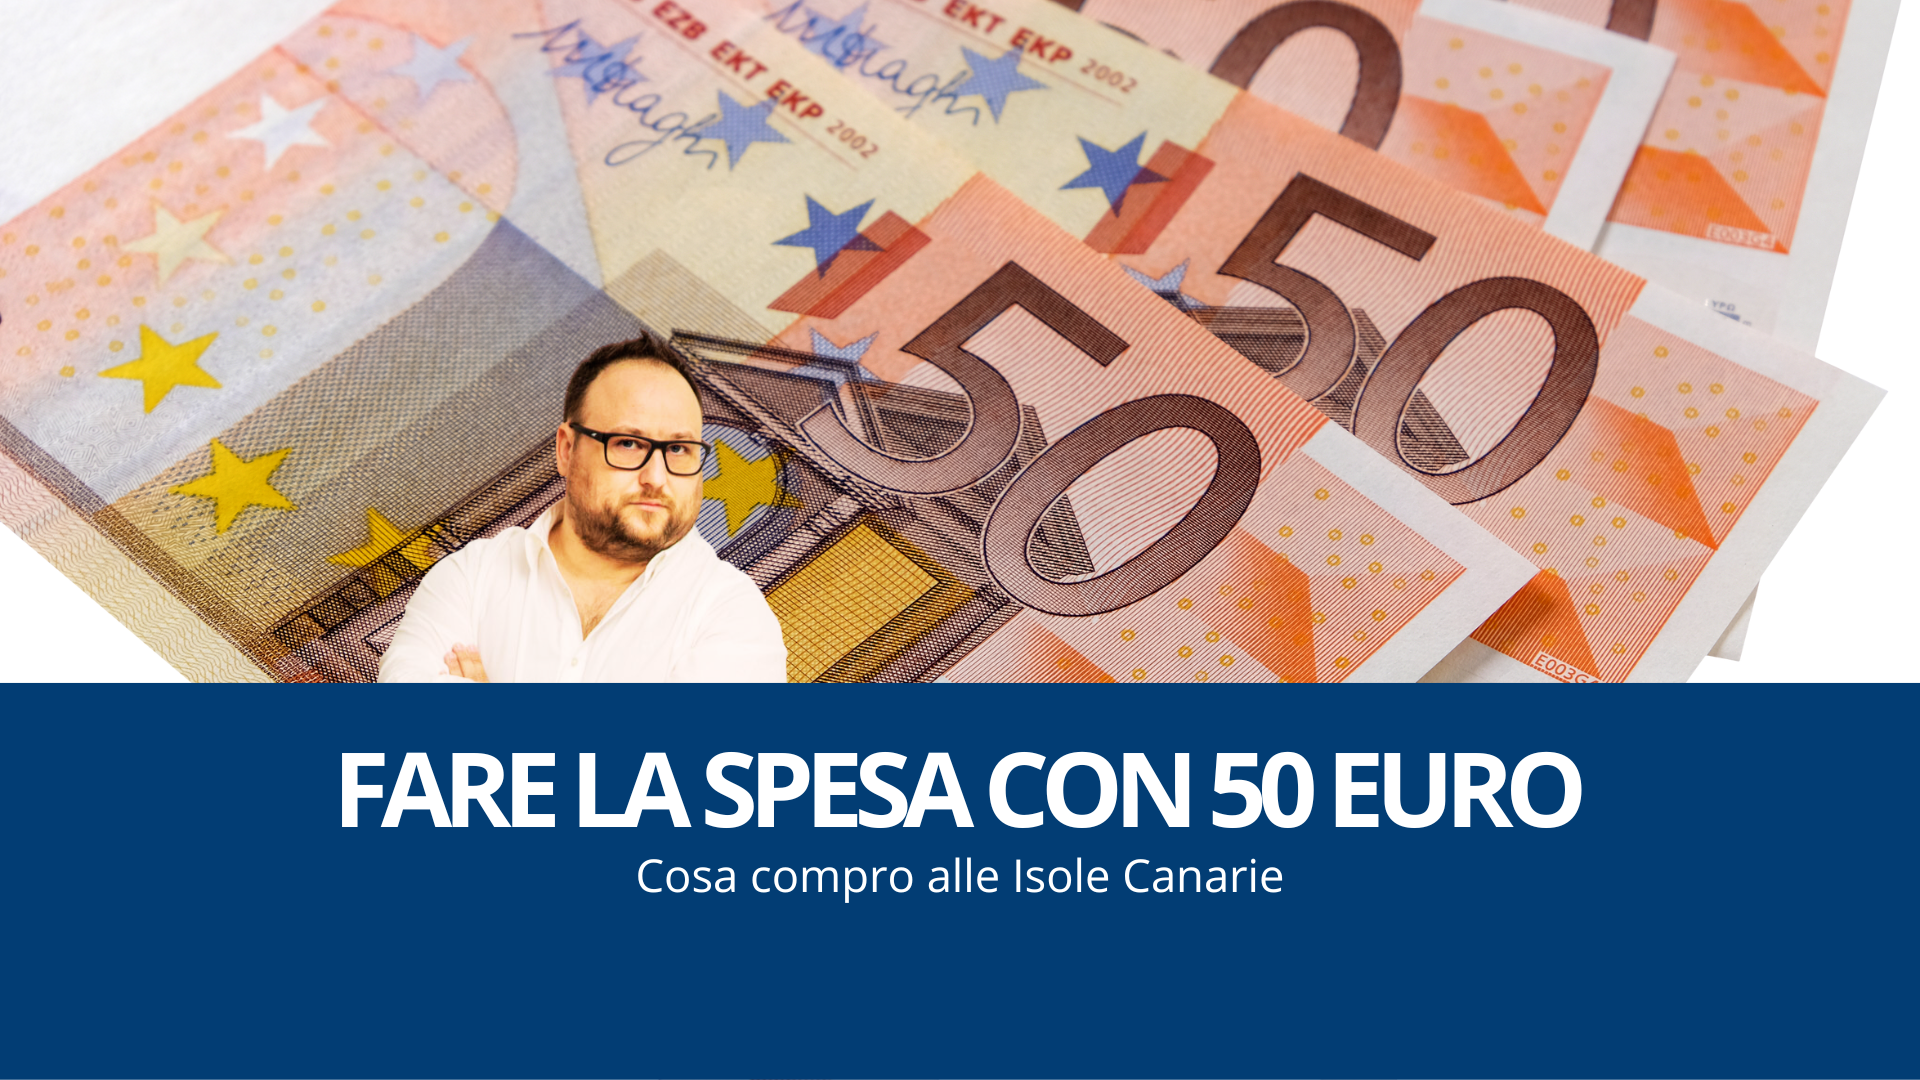 Fare la spesa con 50 euro: cosa compro alle Canarie